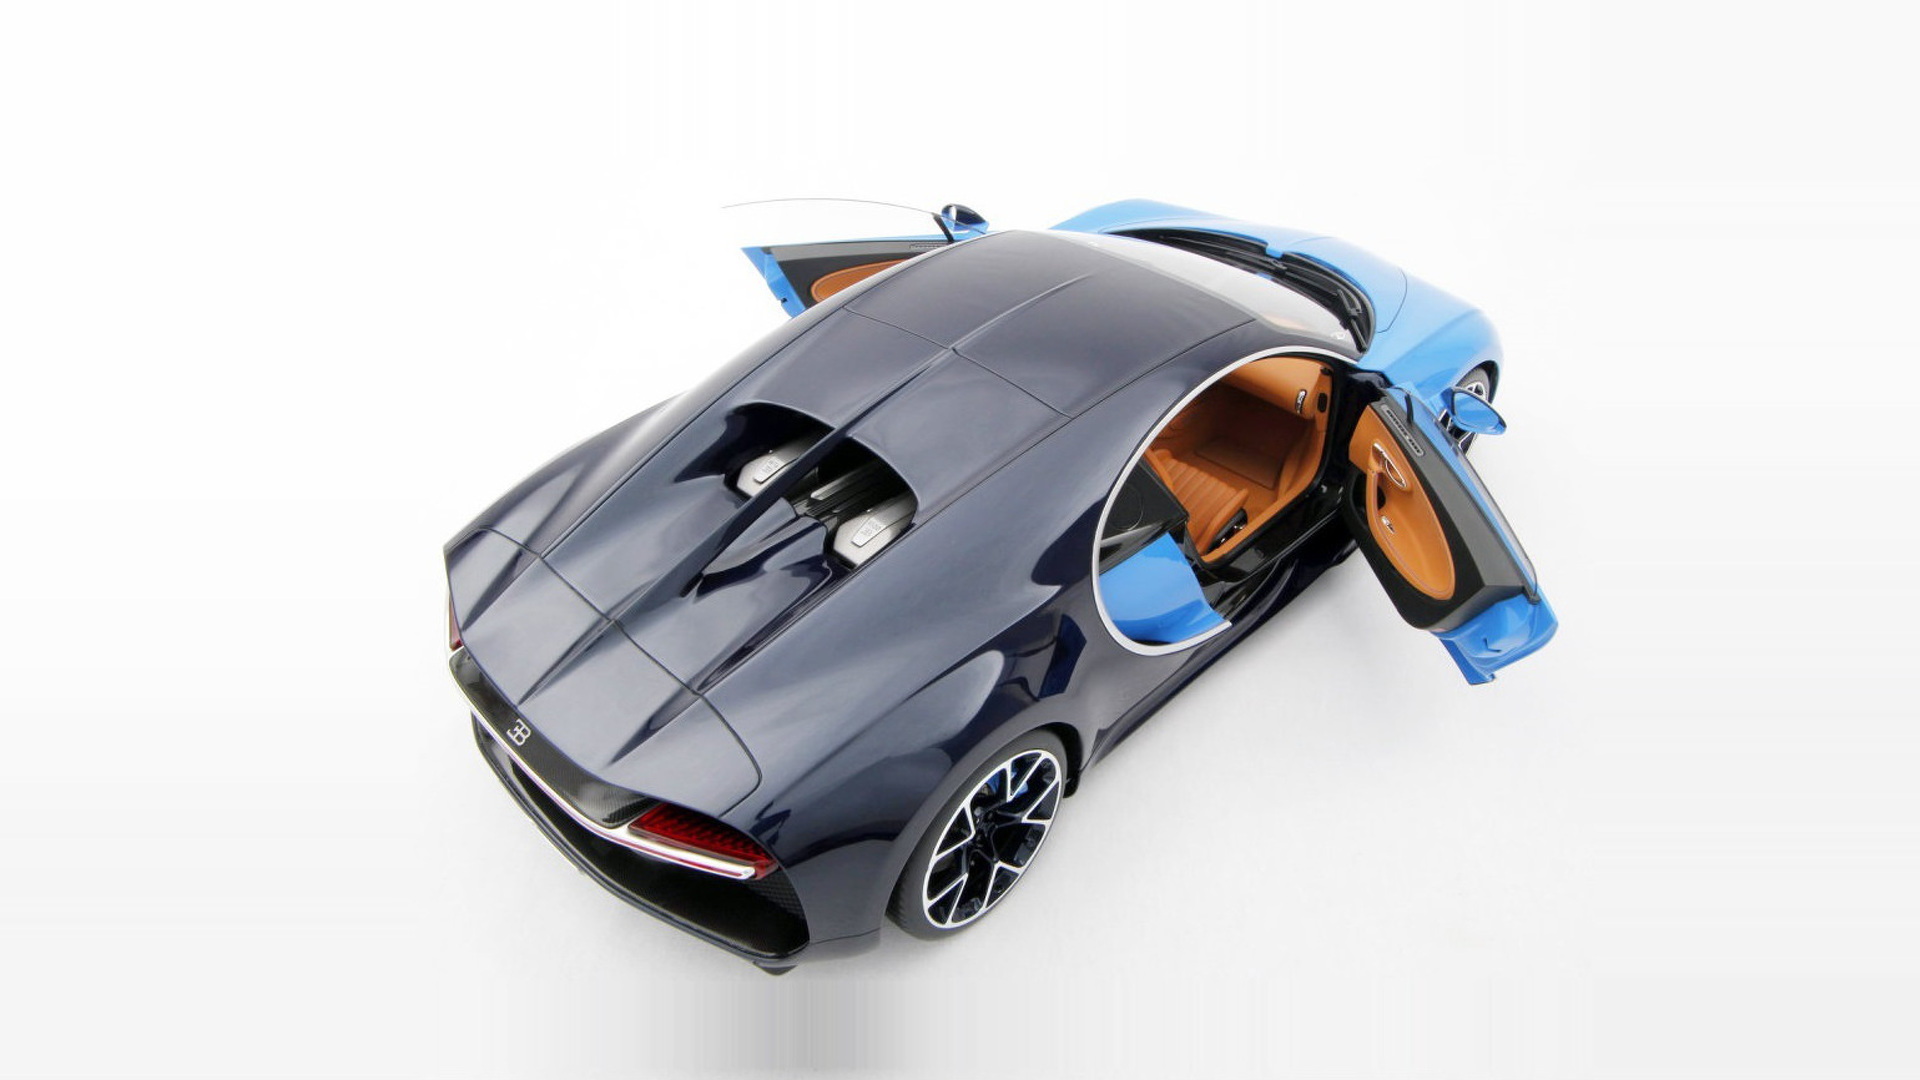 Amalgam Collection created a 1:8 scale Bugatti Chiron